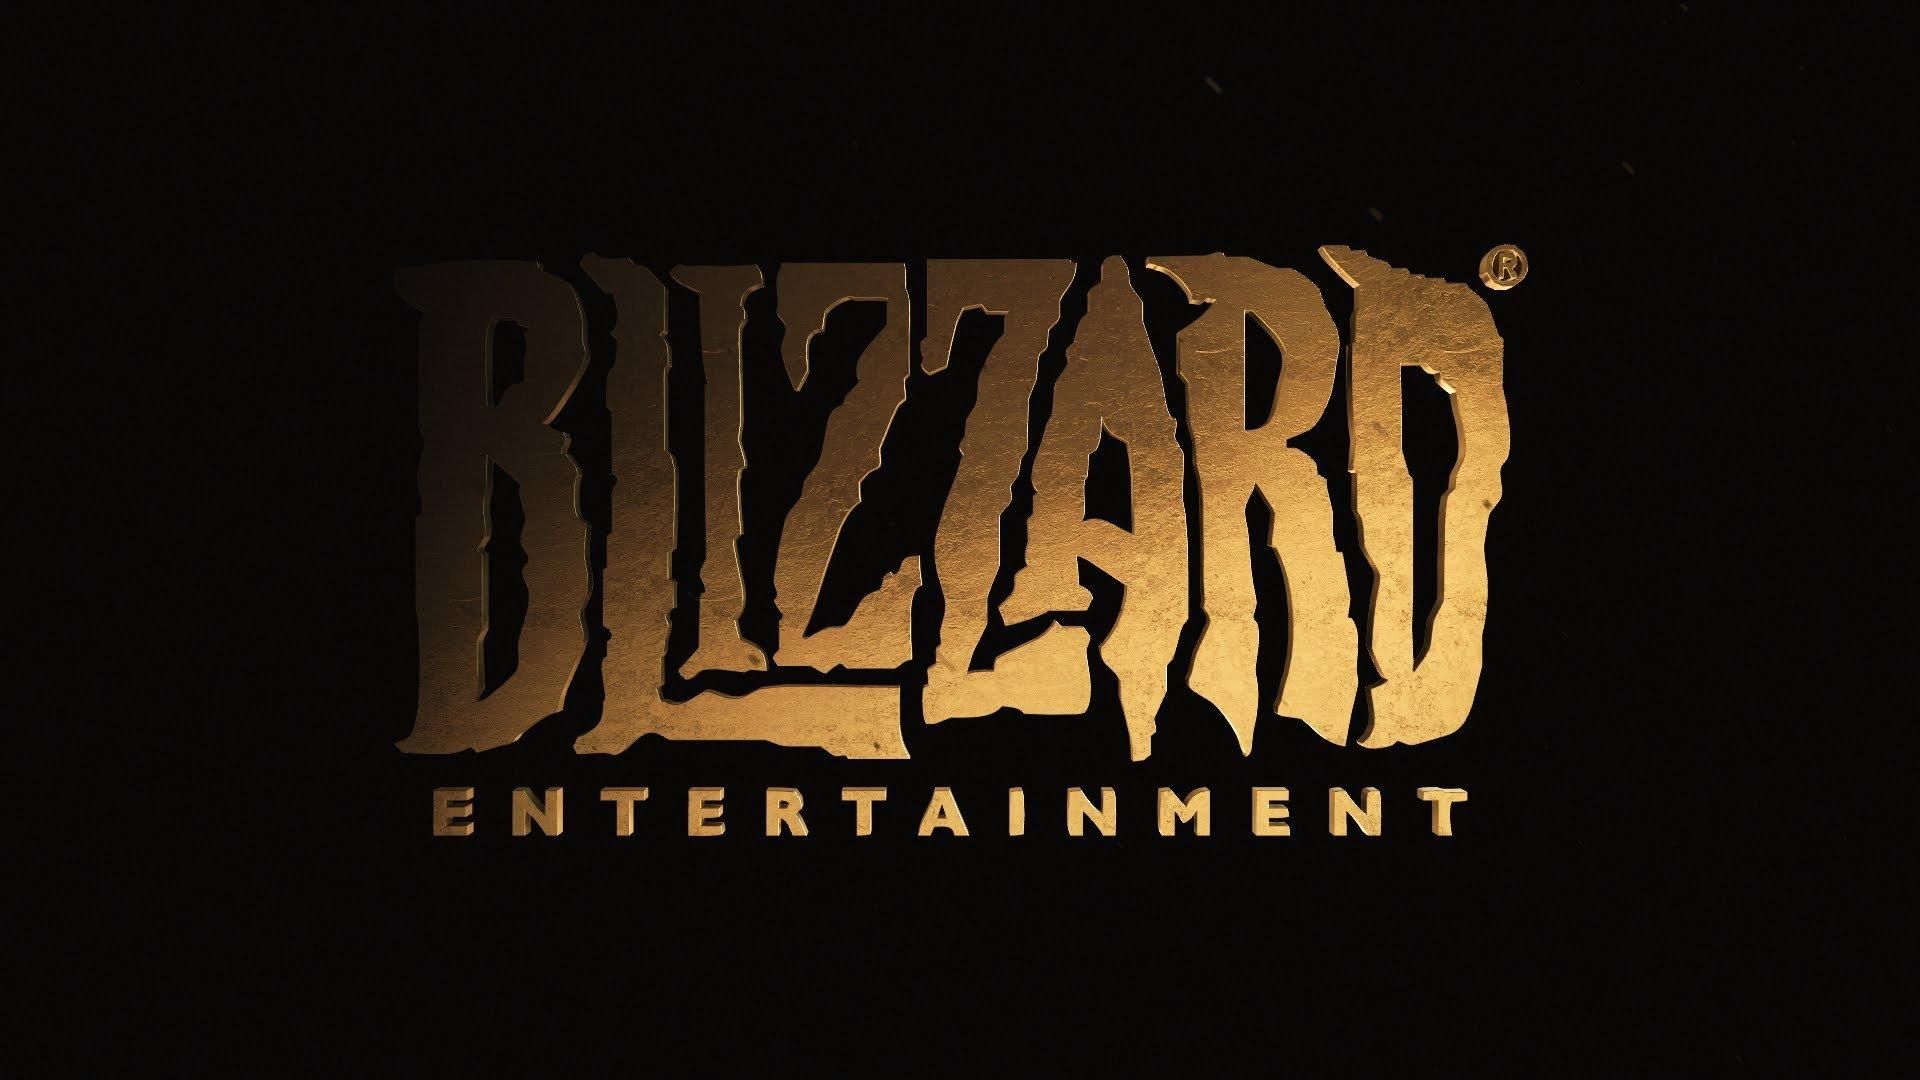 Студія Blizzard влаштувала власний шалений новорічний розпродаж ігор